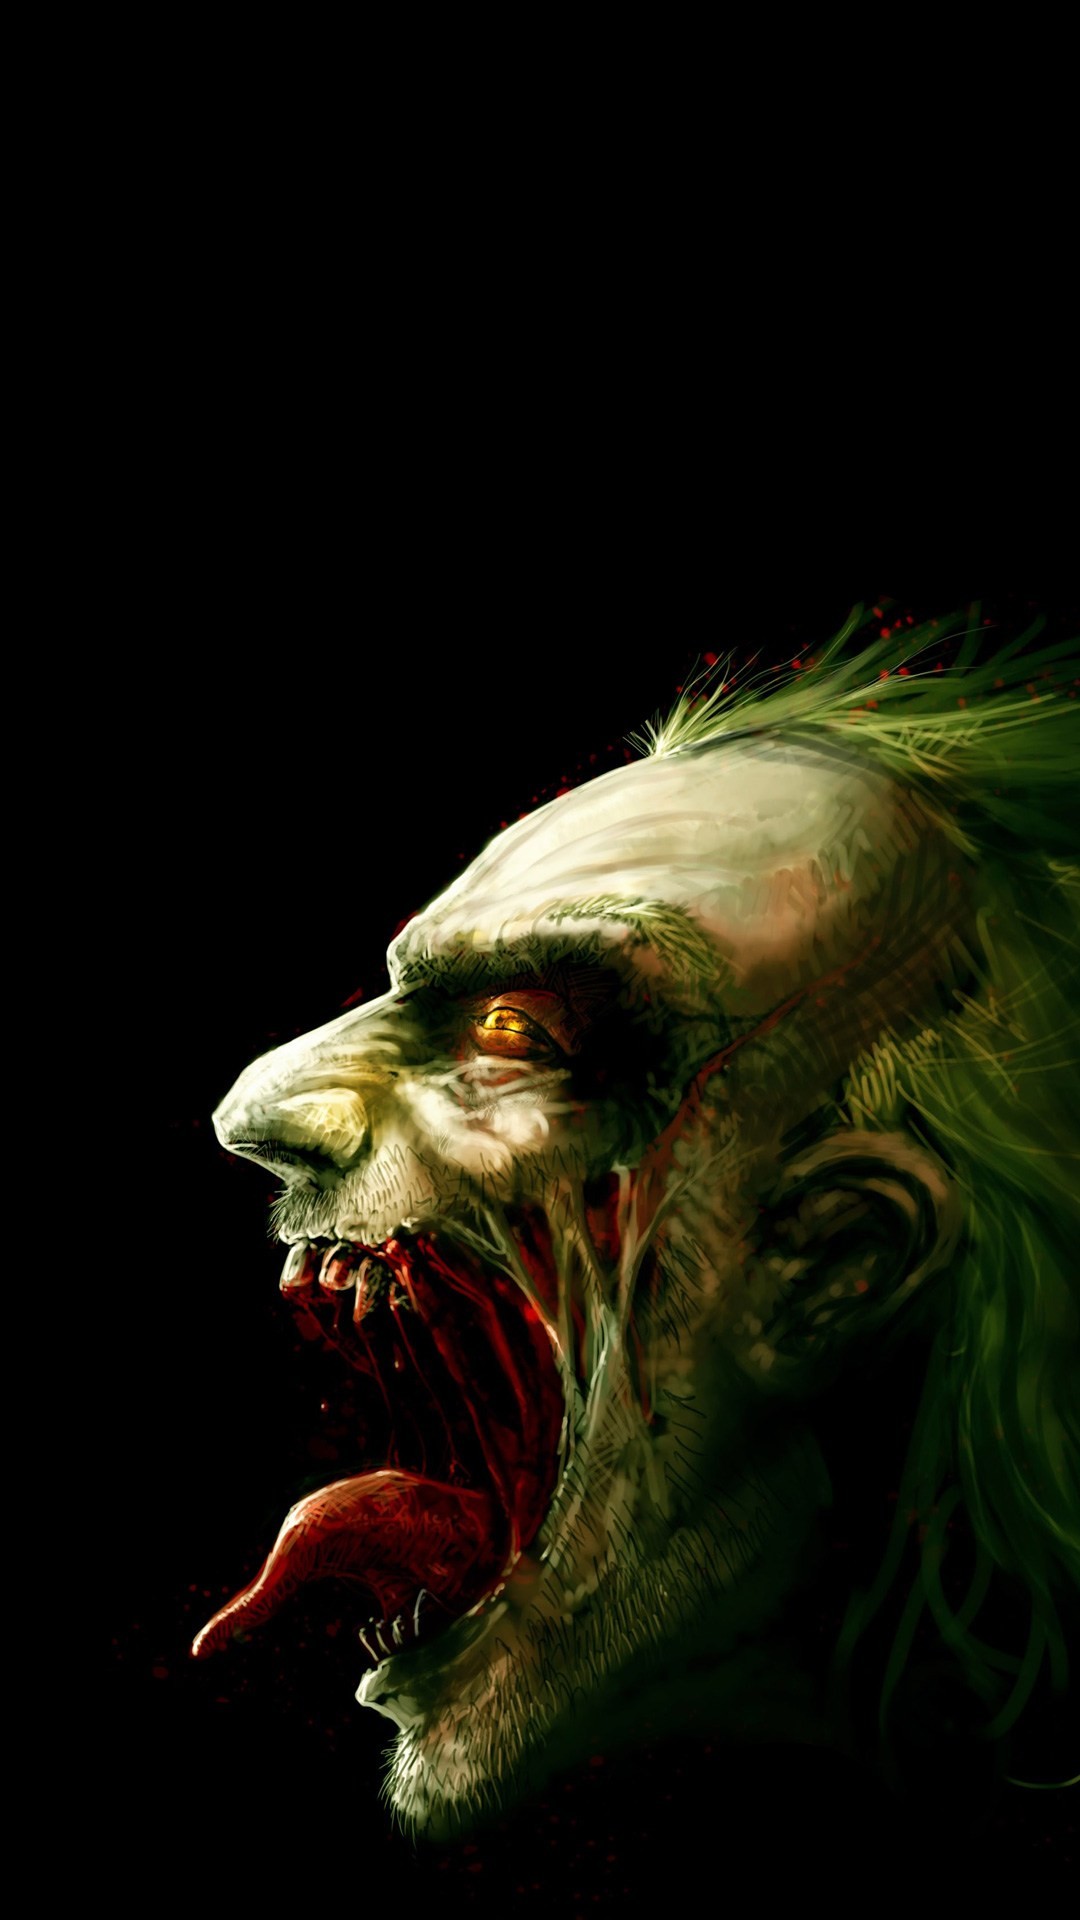 joker wallpaper iphone,fictional character,joker,supervillain,werewolf,illustration